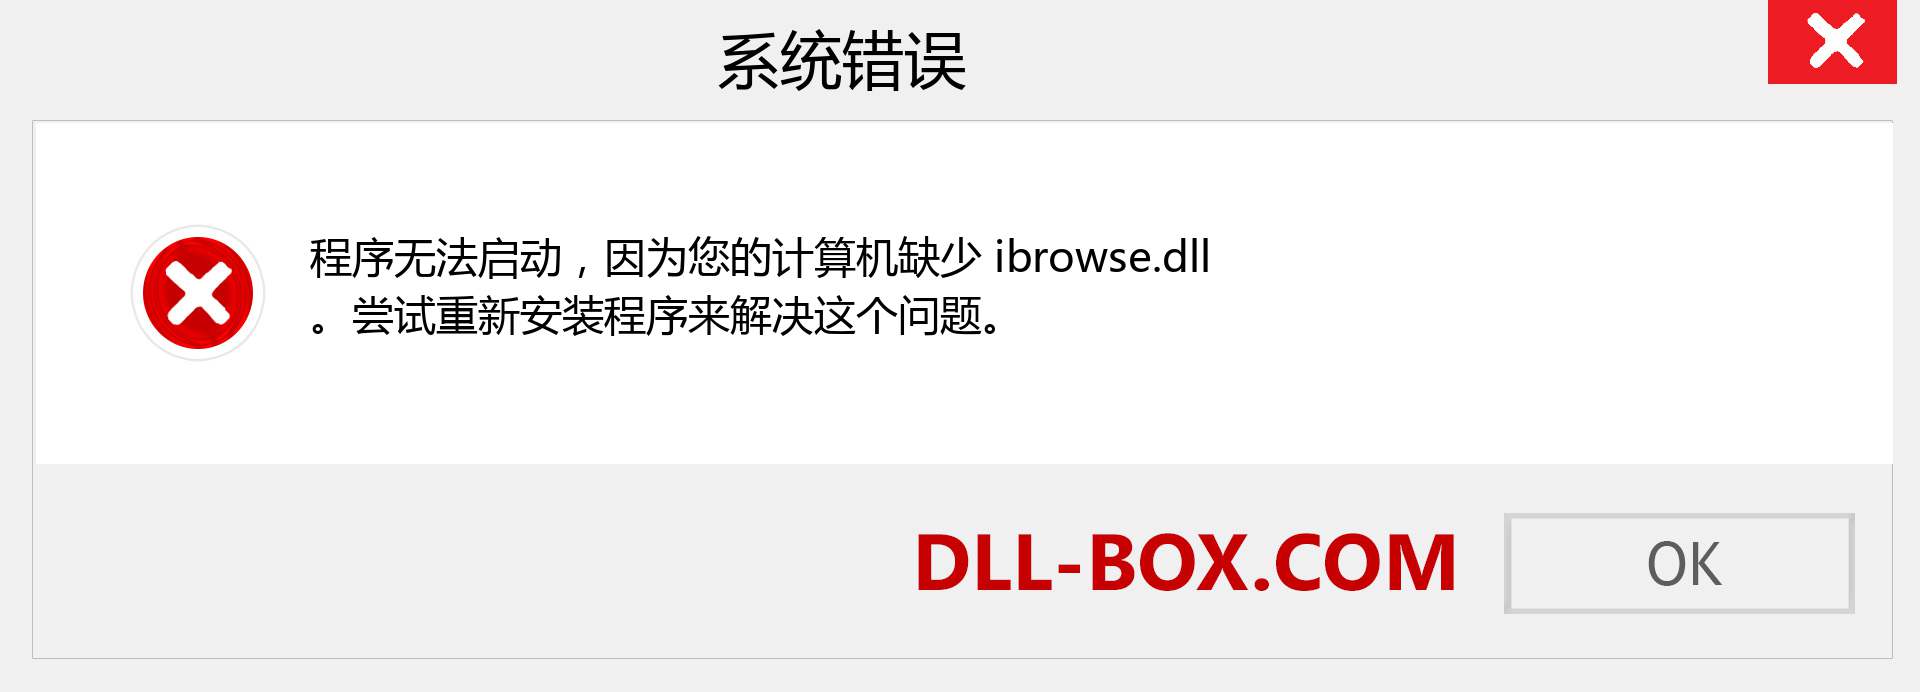 ibrowse.dll 文件丢失？。 适用于 Windows 7、8、10 的下载 - 修复 Windows、照片、图像上的 ibrowse dll 丢失错误